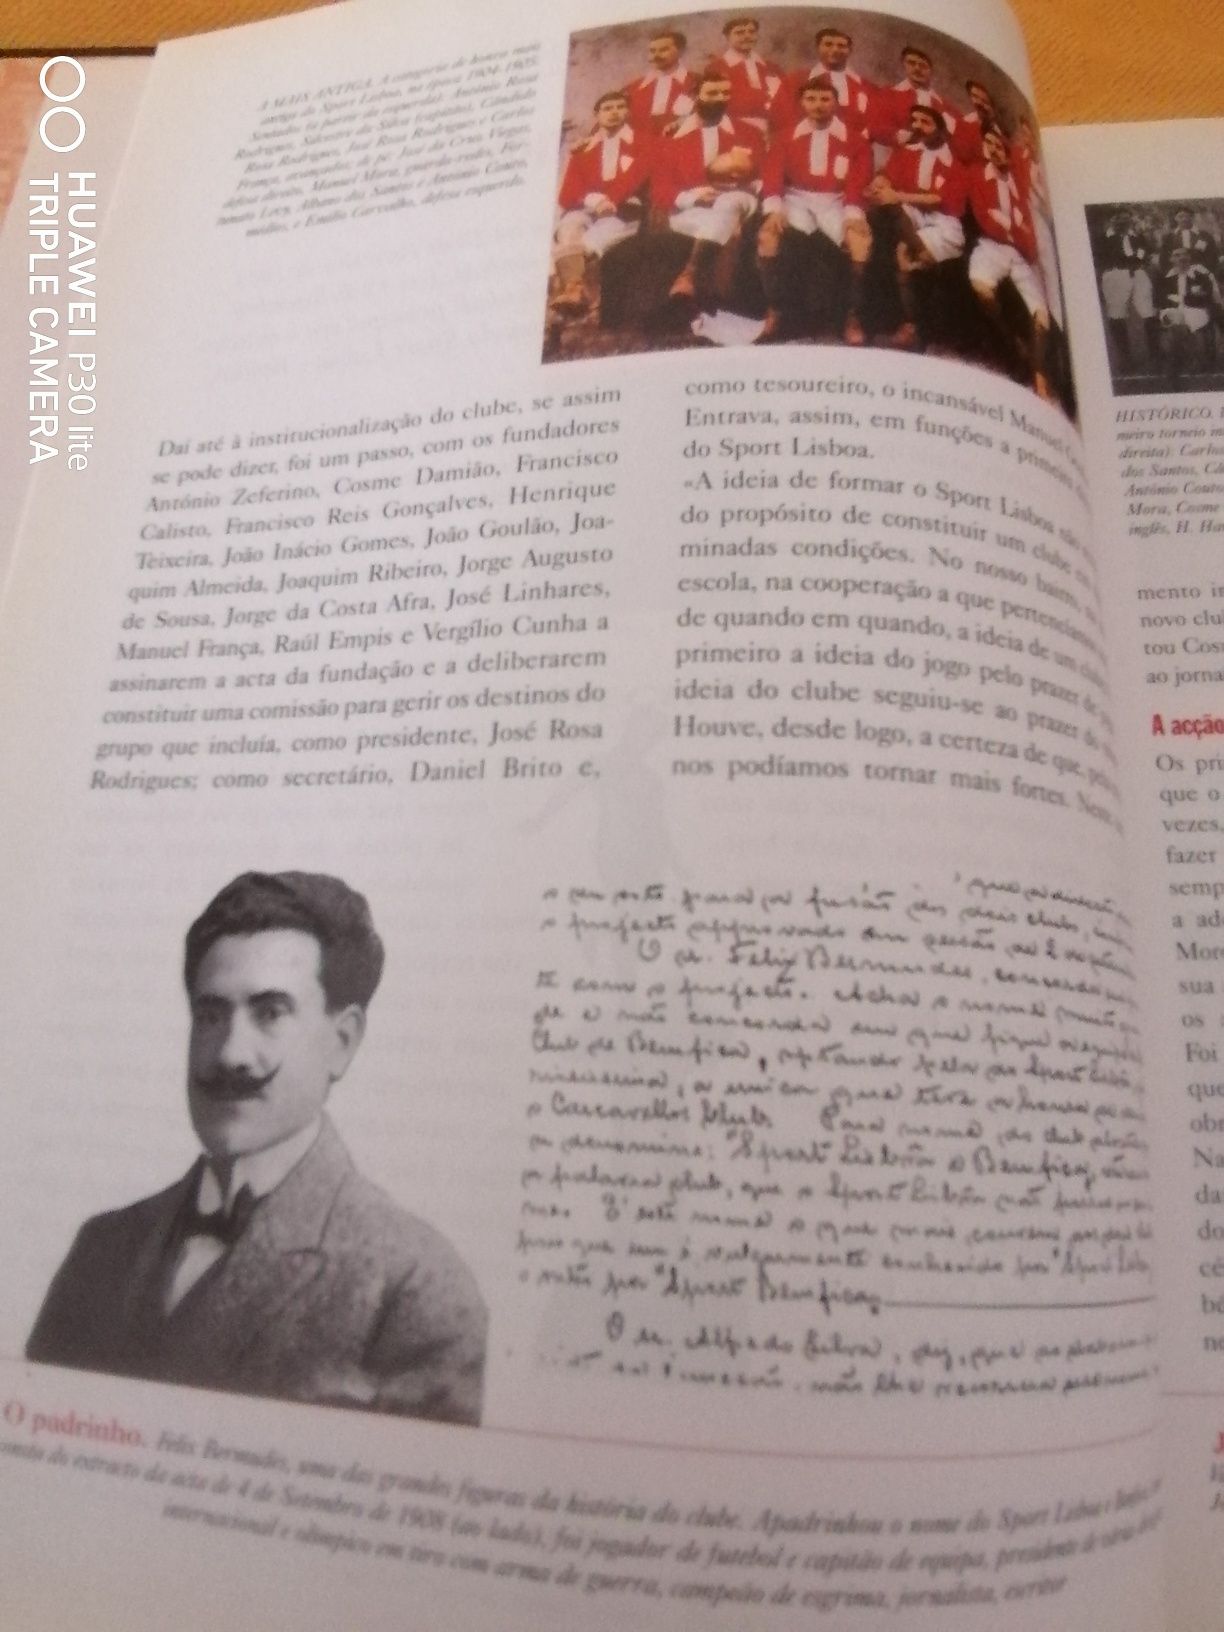 Livro Benfica, "A historia os triunfos e as imagens de todos os tempo